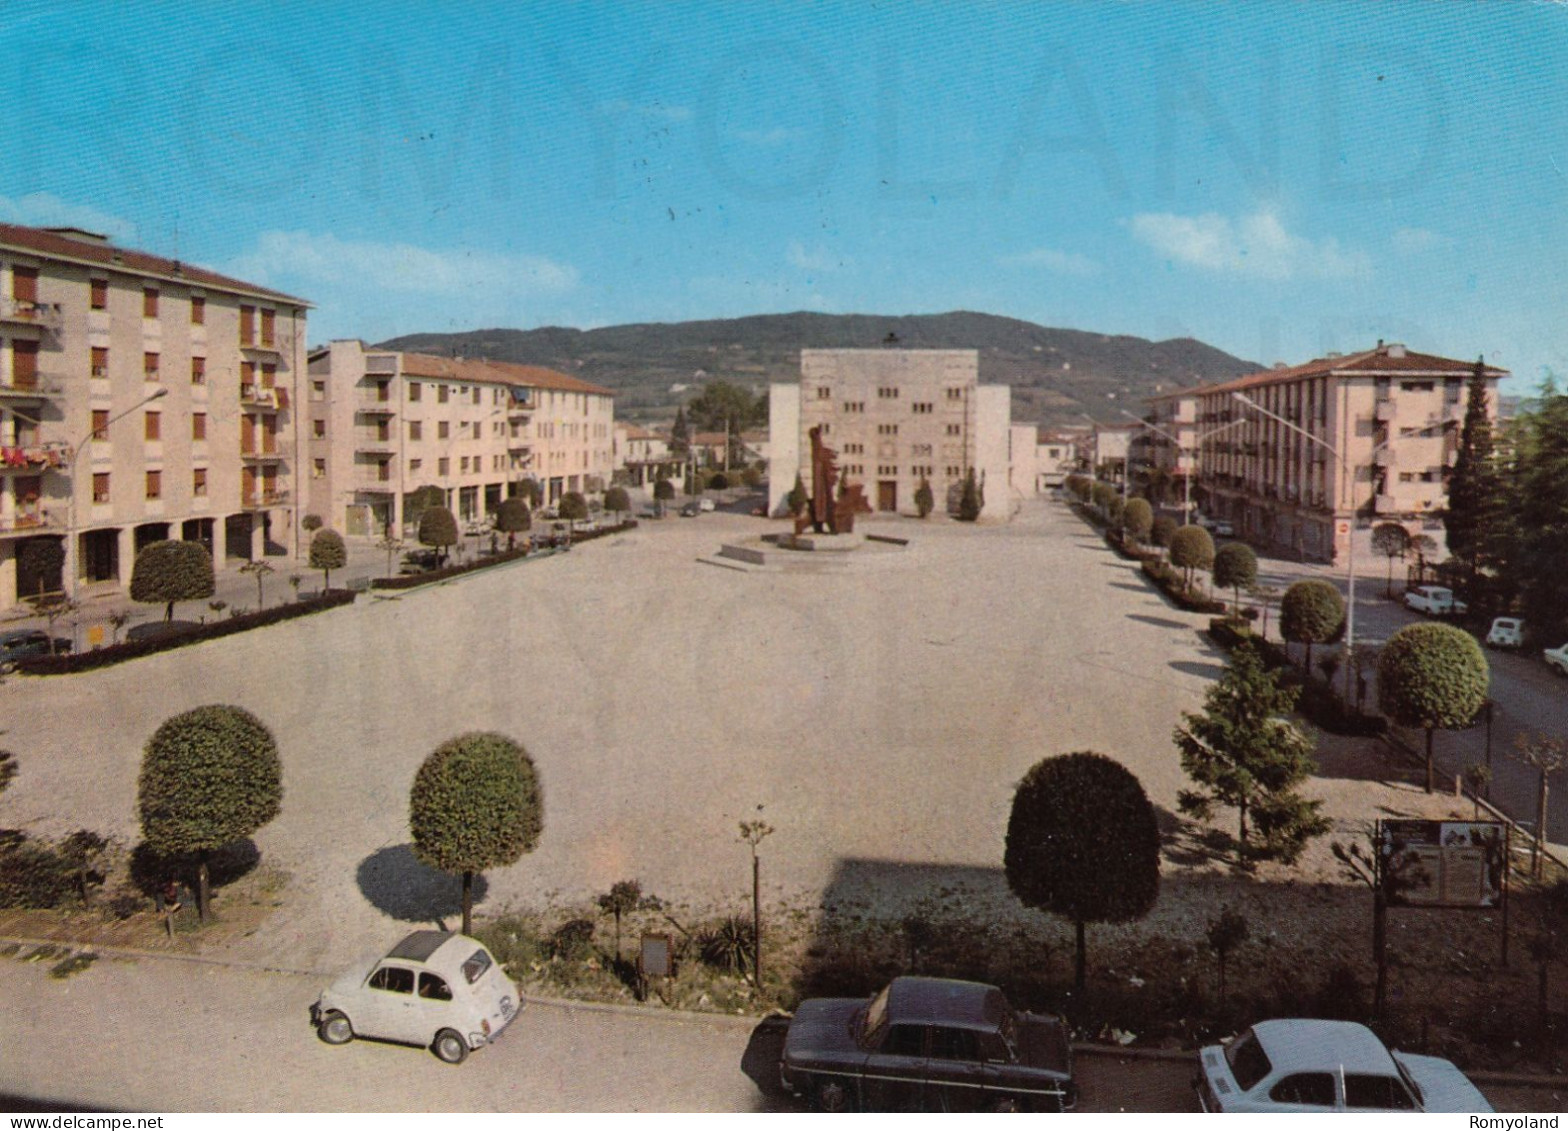 CARTOLINA  C16 ALTE CECCATO,VICENZA,VENETO-PIAZZA S.PAOLO-STORIA,MEMORIA,CULTURA,IMPERO ROMANO,VIAGGIATA 1976 - Vicenza